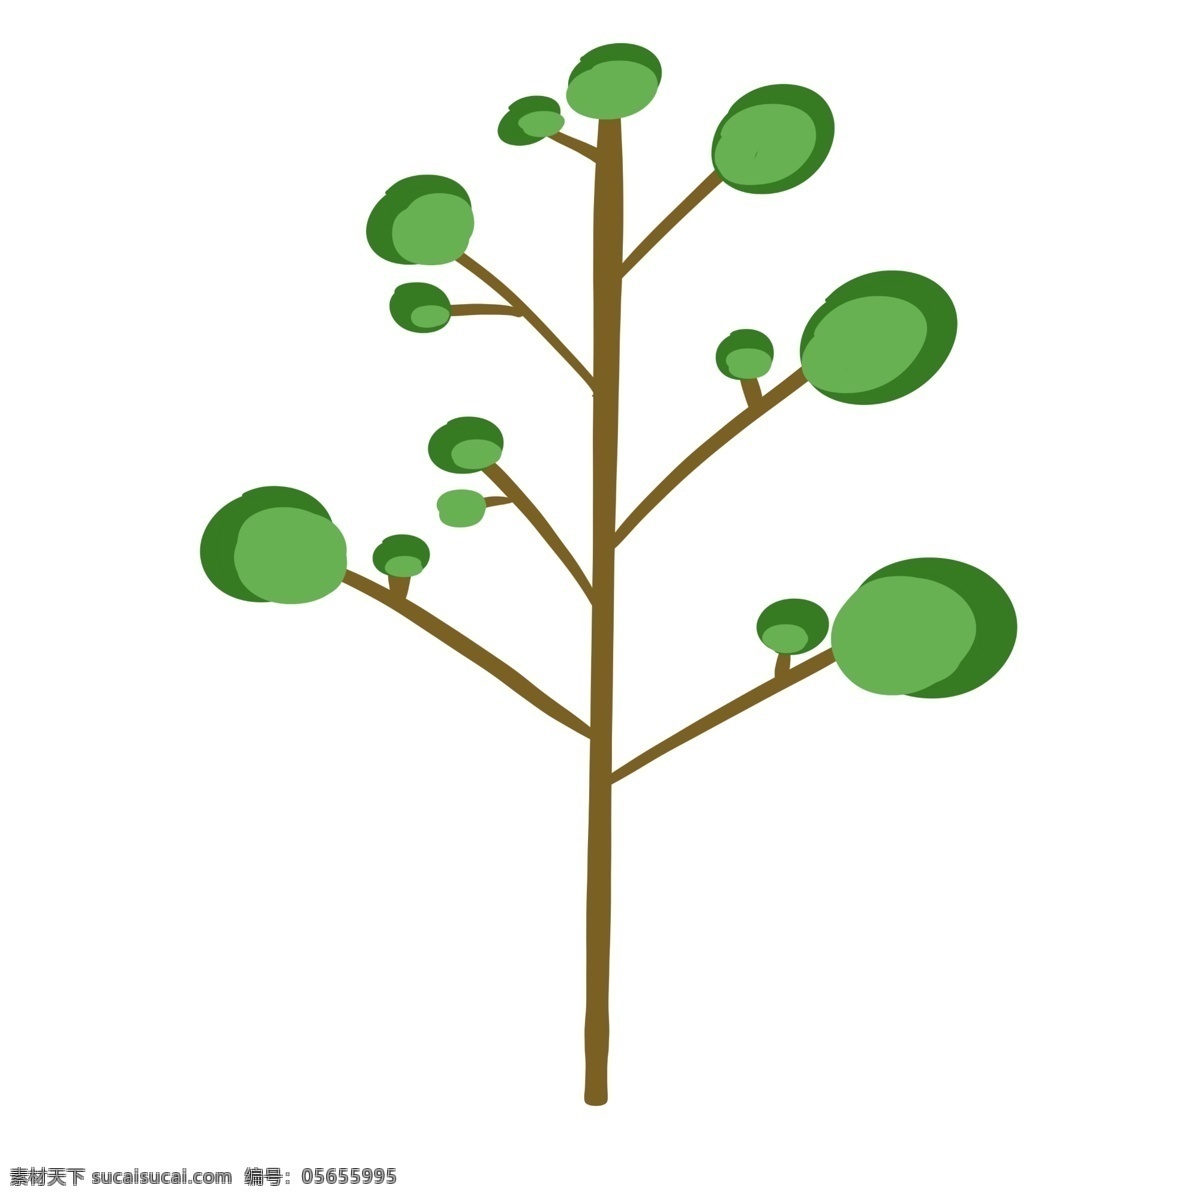 手绘 元素 树木 树 绿色 简单 可爱 简约 卡通 卡通树木 简约树木 绿色树木 简单树木 简约卡通